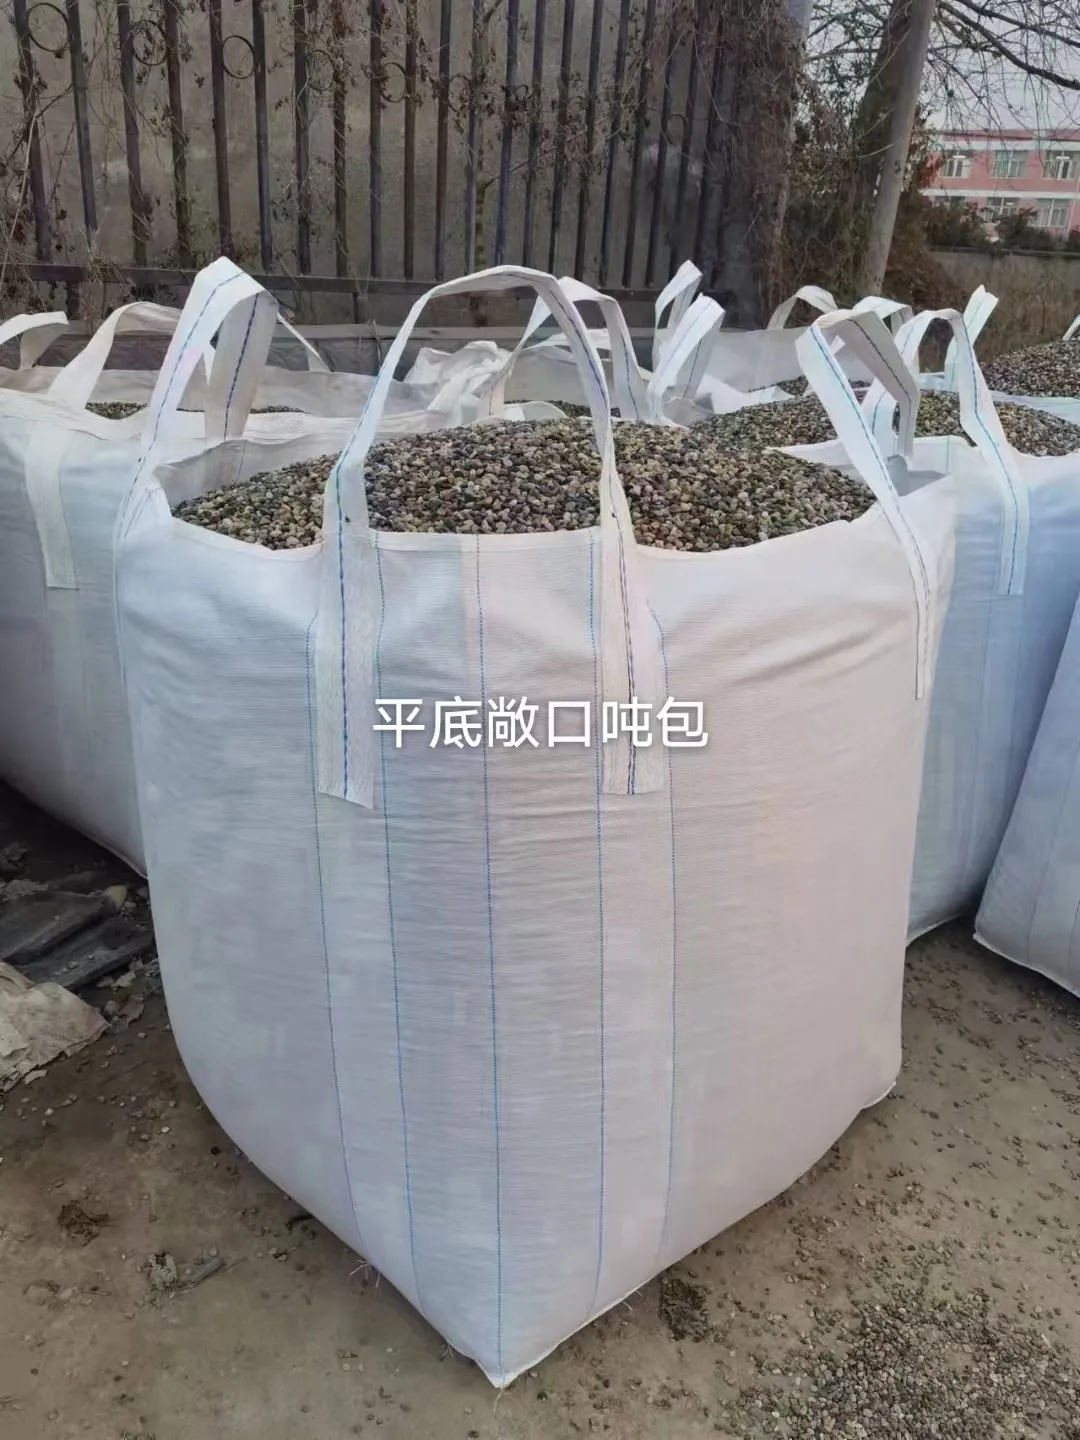 حقيبة رملية كبيرة LDPE بسعة 1.5 طن و2 طن للبيع بالجملة من المصنع في الصين، FIBC سائبة 1500 كجم PP بقاعدة مسطحة مع خيار حقيبة كبيرة للبيع